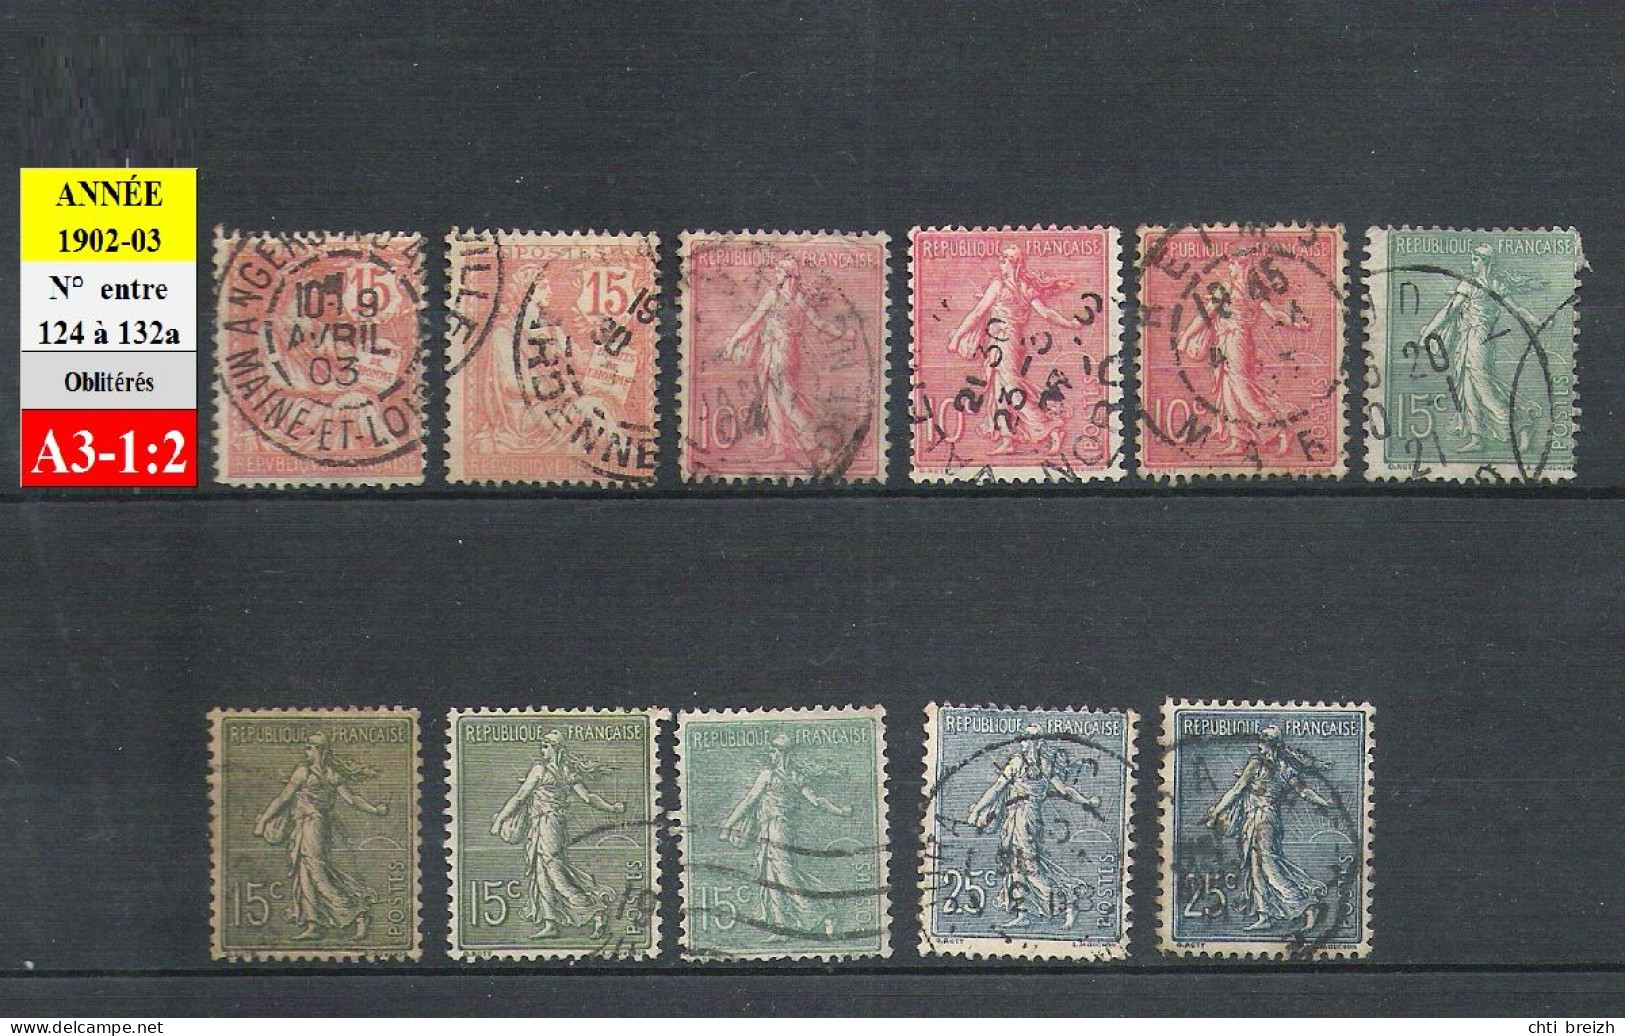 Timbres Oblitérés Entre N° 124 & 132a - Année 1902-03 - Used Stamps